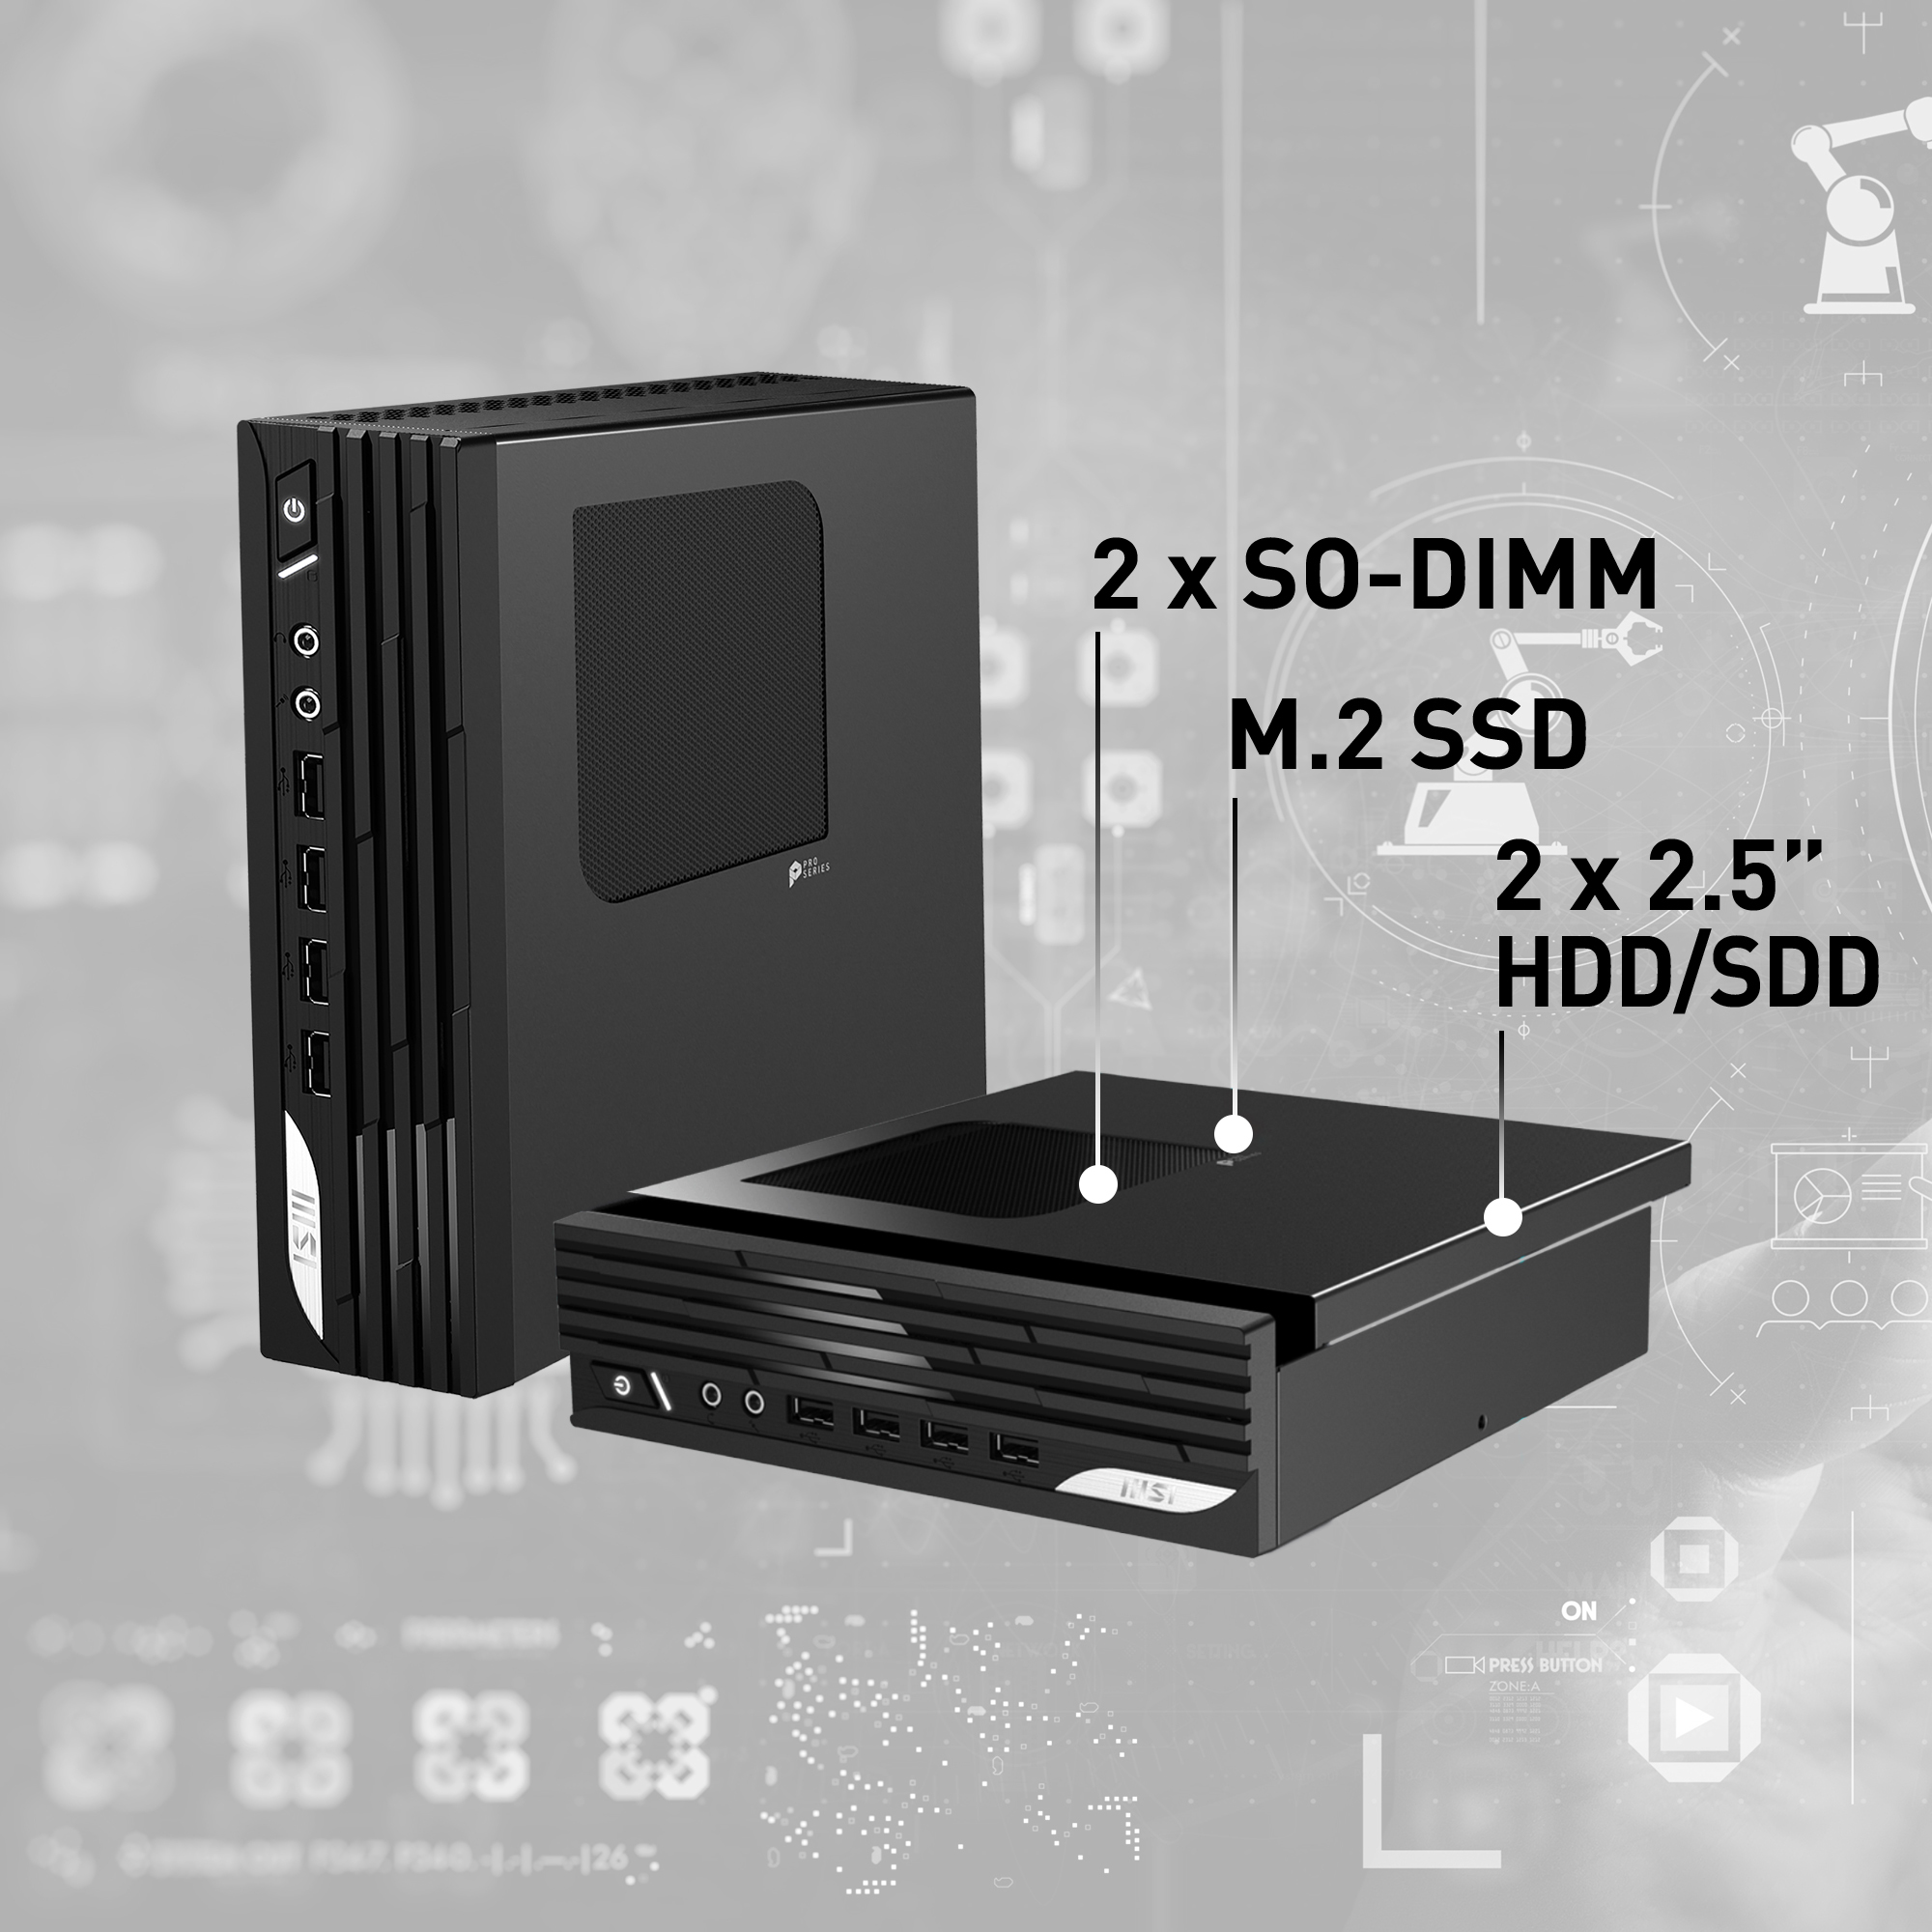 MSI PRO DP21 12M Intel Core i3-12100 Barebone, Mini-PC, 2.3L, Type-C, USB 3.2 Gen2, HDMI, DisplayPort, LAN, WiFi, BT, VESA, Supports Max 64GB DDR4 SO-DIMM (2 Slots), M.2 (1 Slot), 2.5'SSD/HDD (2 Slot)